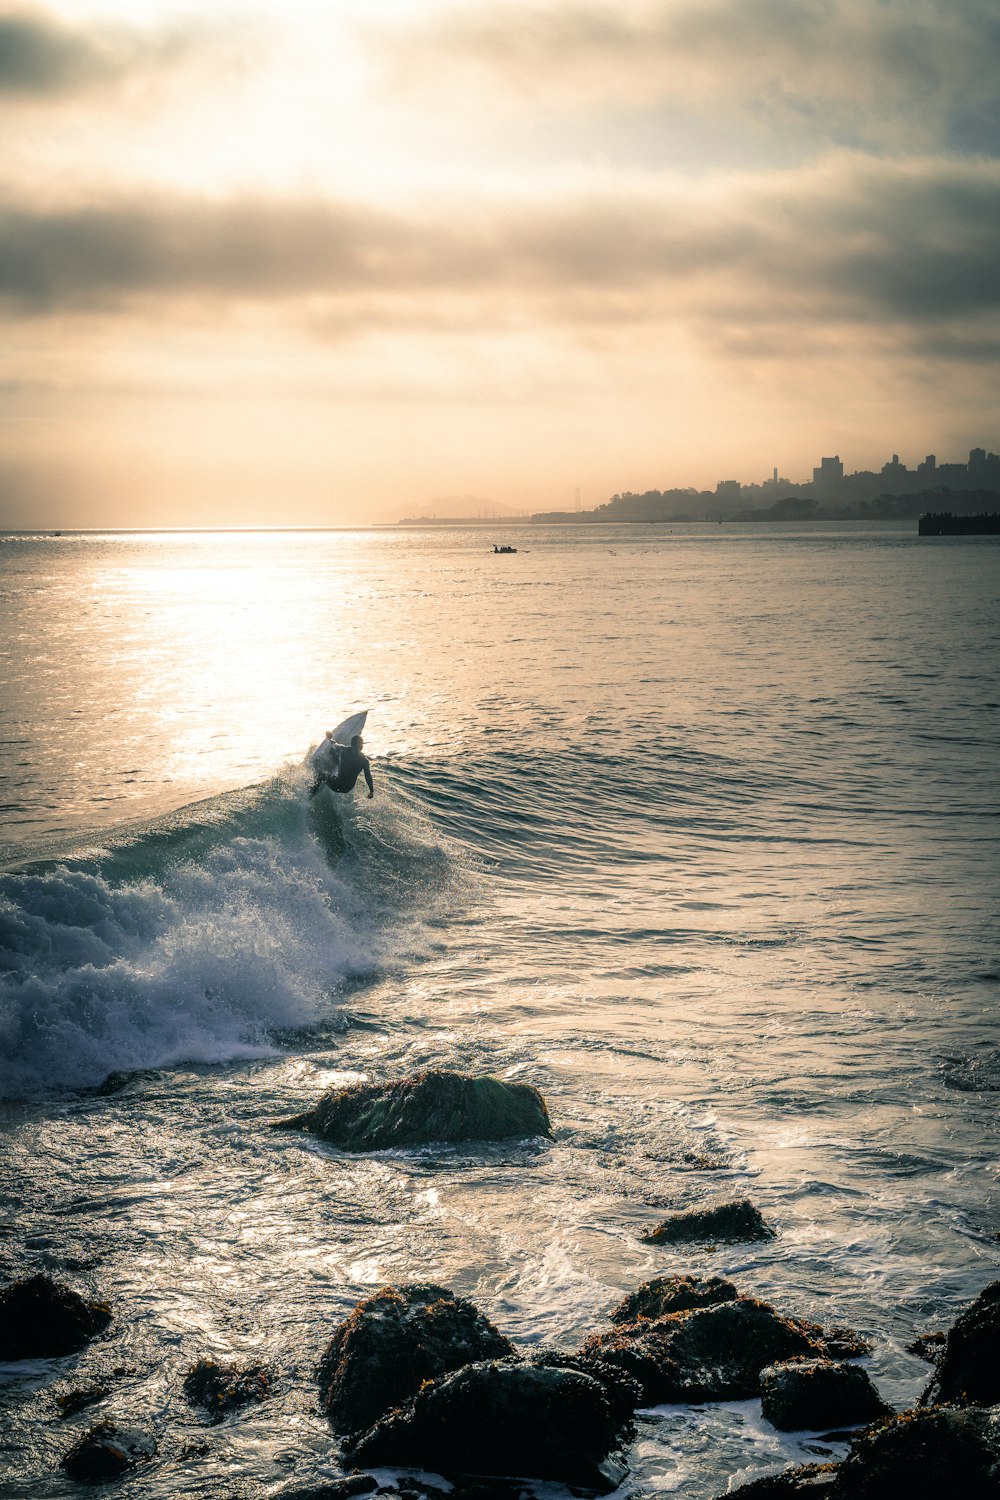 サーフィンする人の写真 Unsplashで見つける壁紙の無料写真